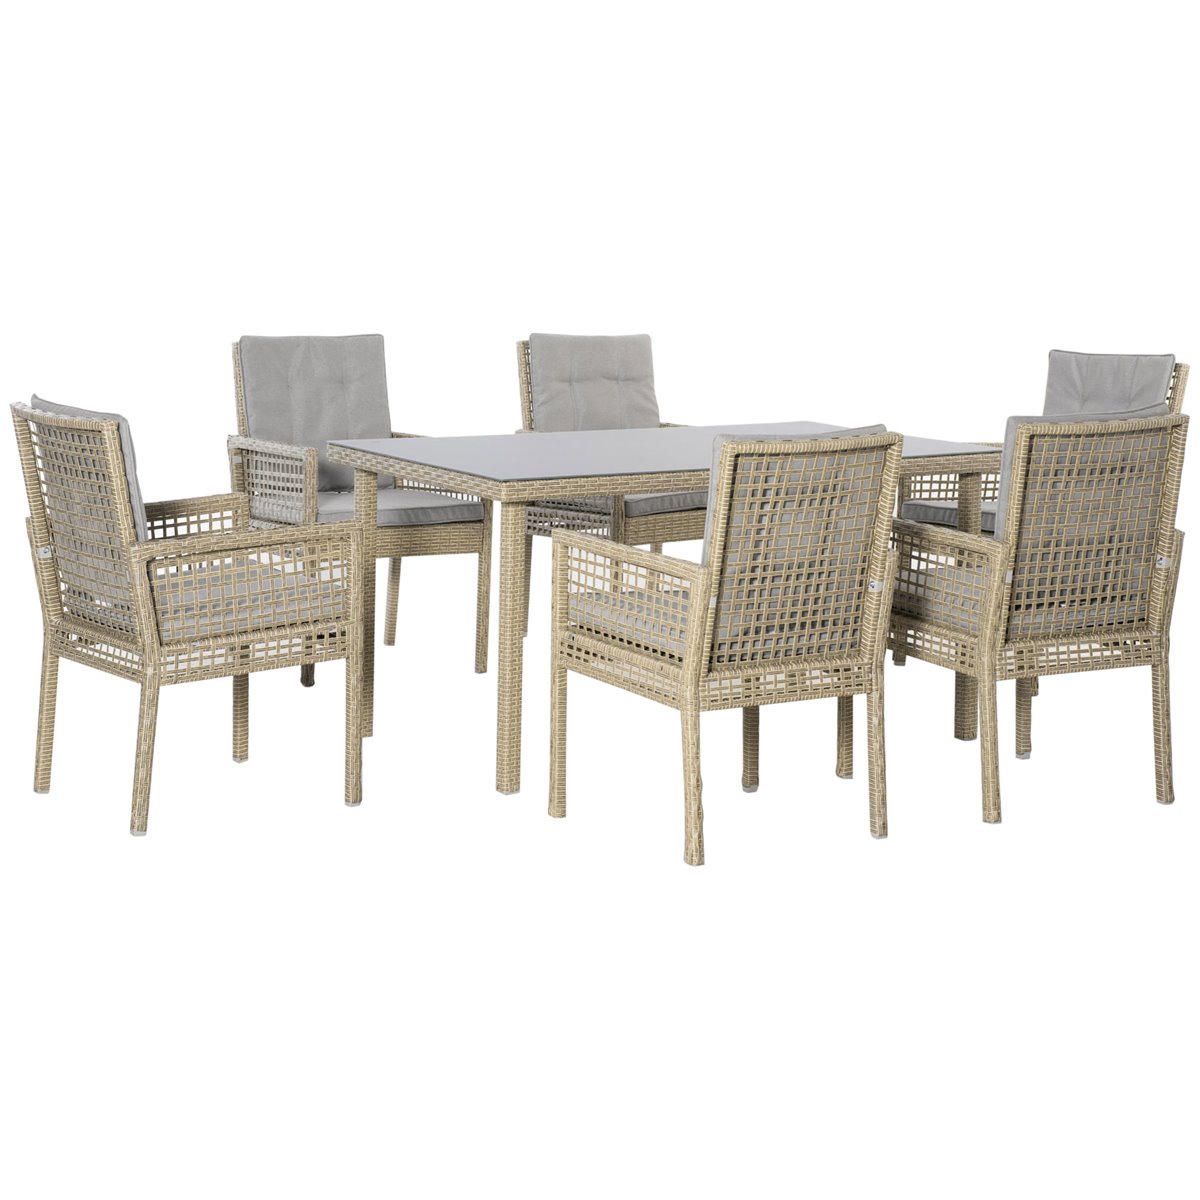 Set muebles de terraza sillas y mesa ratán Aktive - Conforama